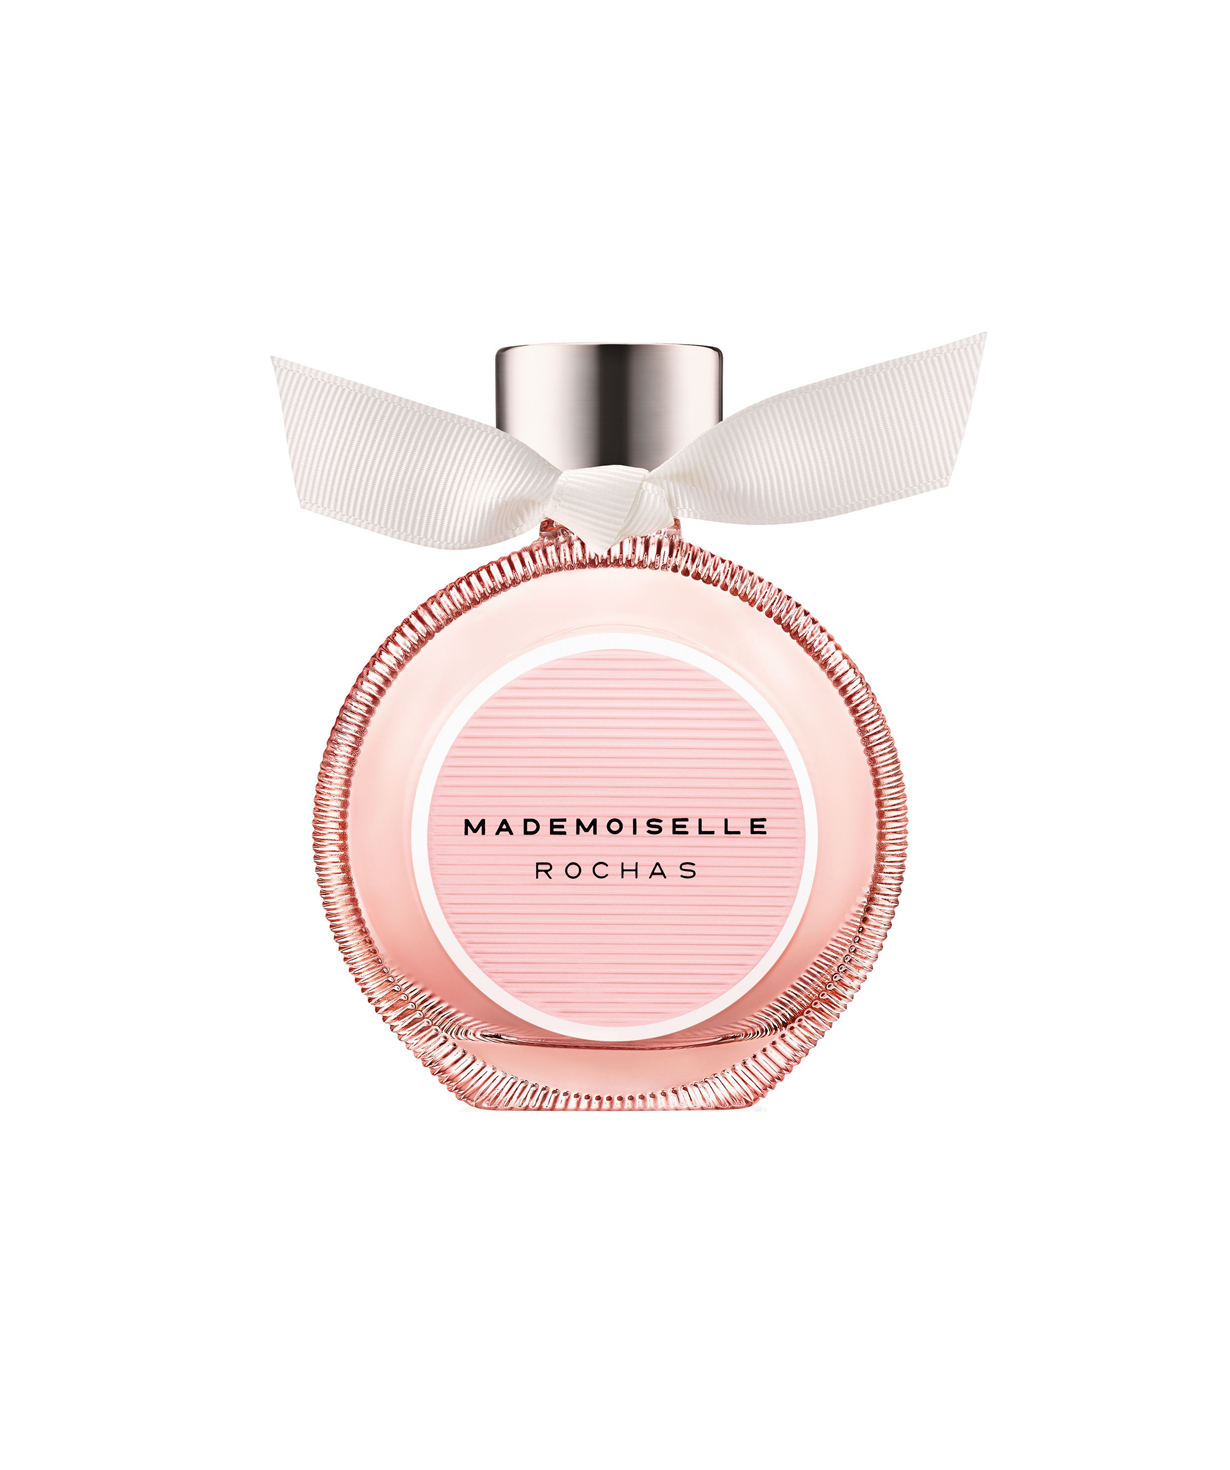 Perfume «Rochas» Mademoiselle, for women, 90 ml